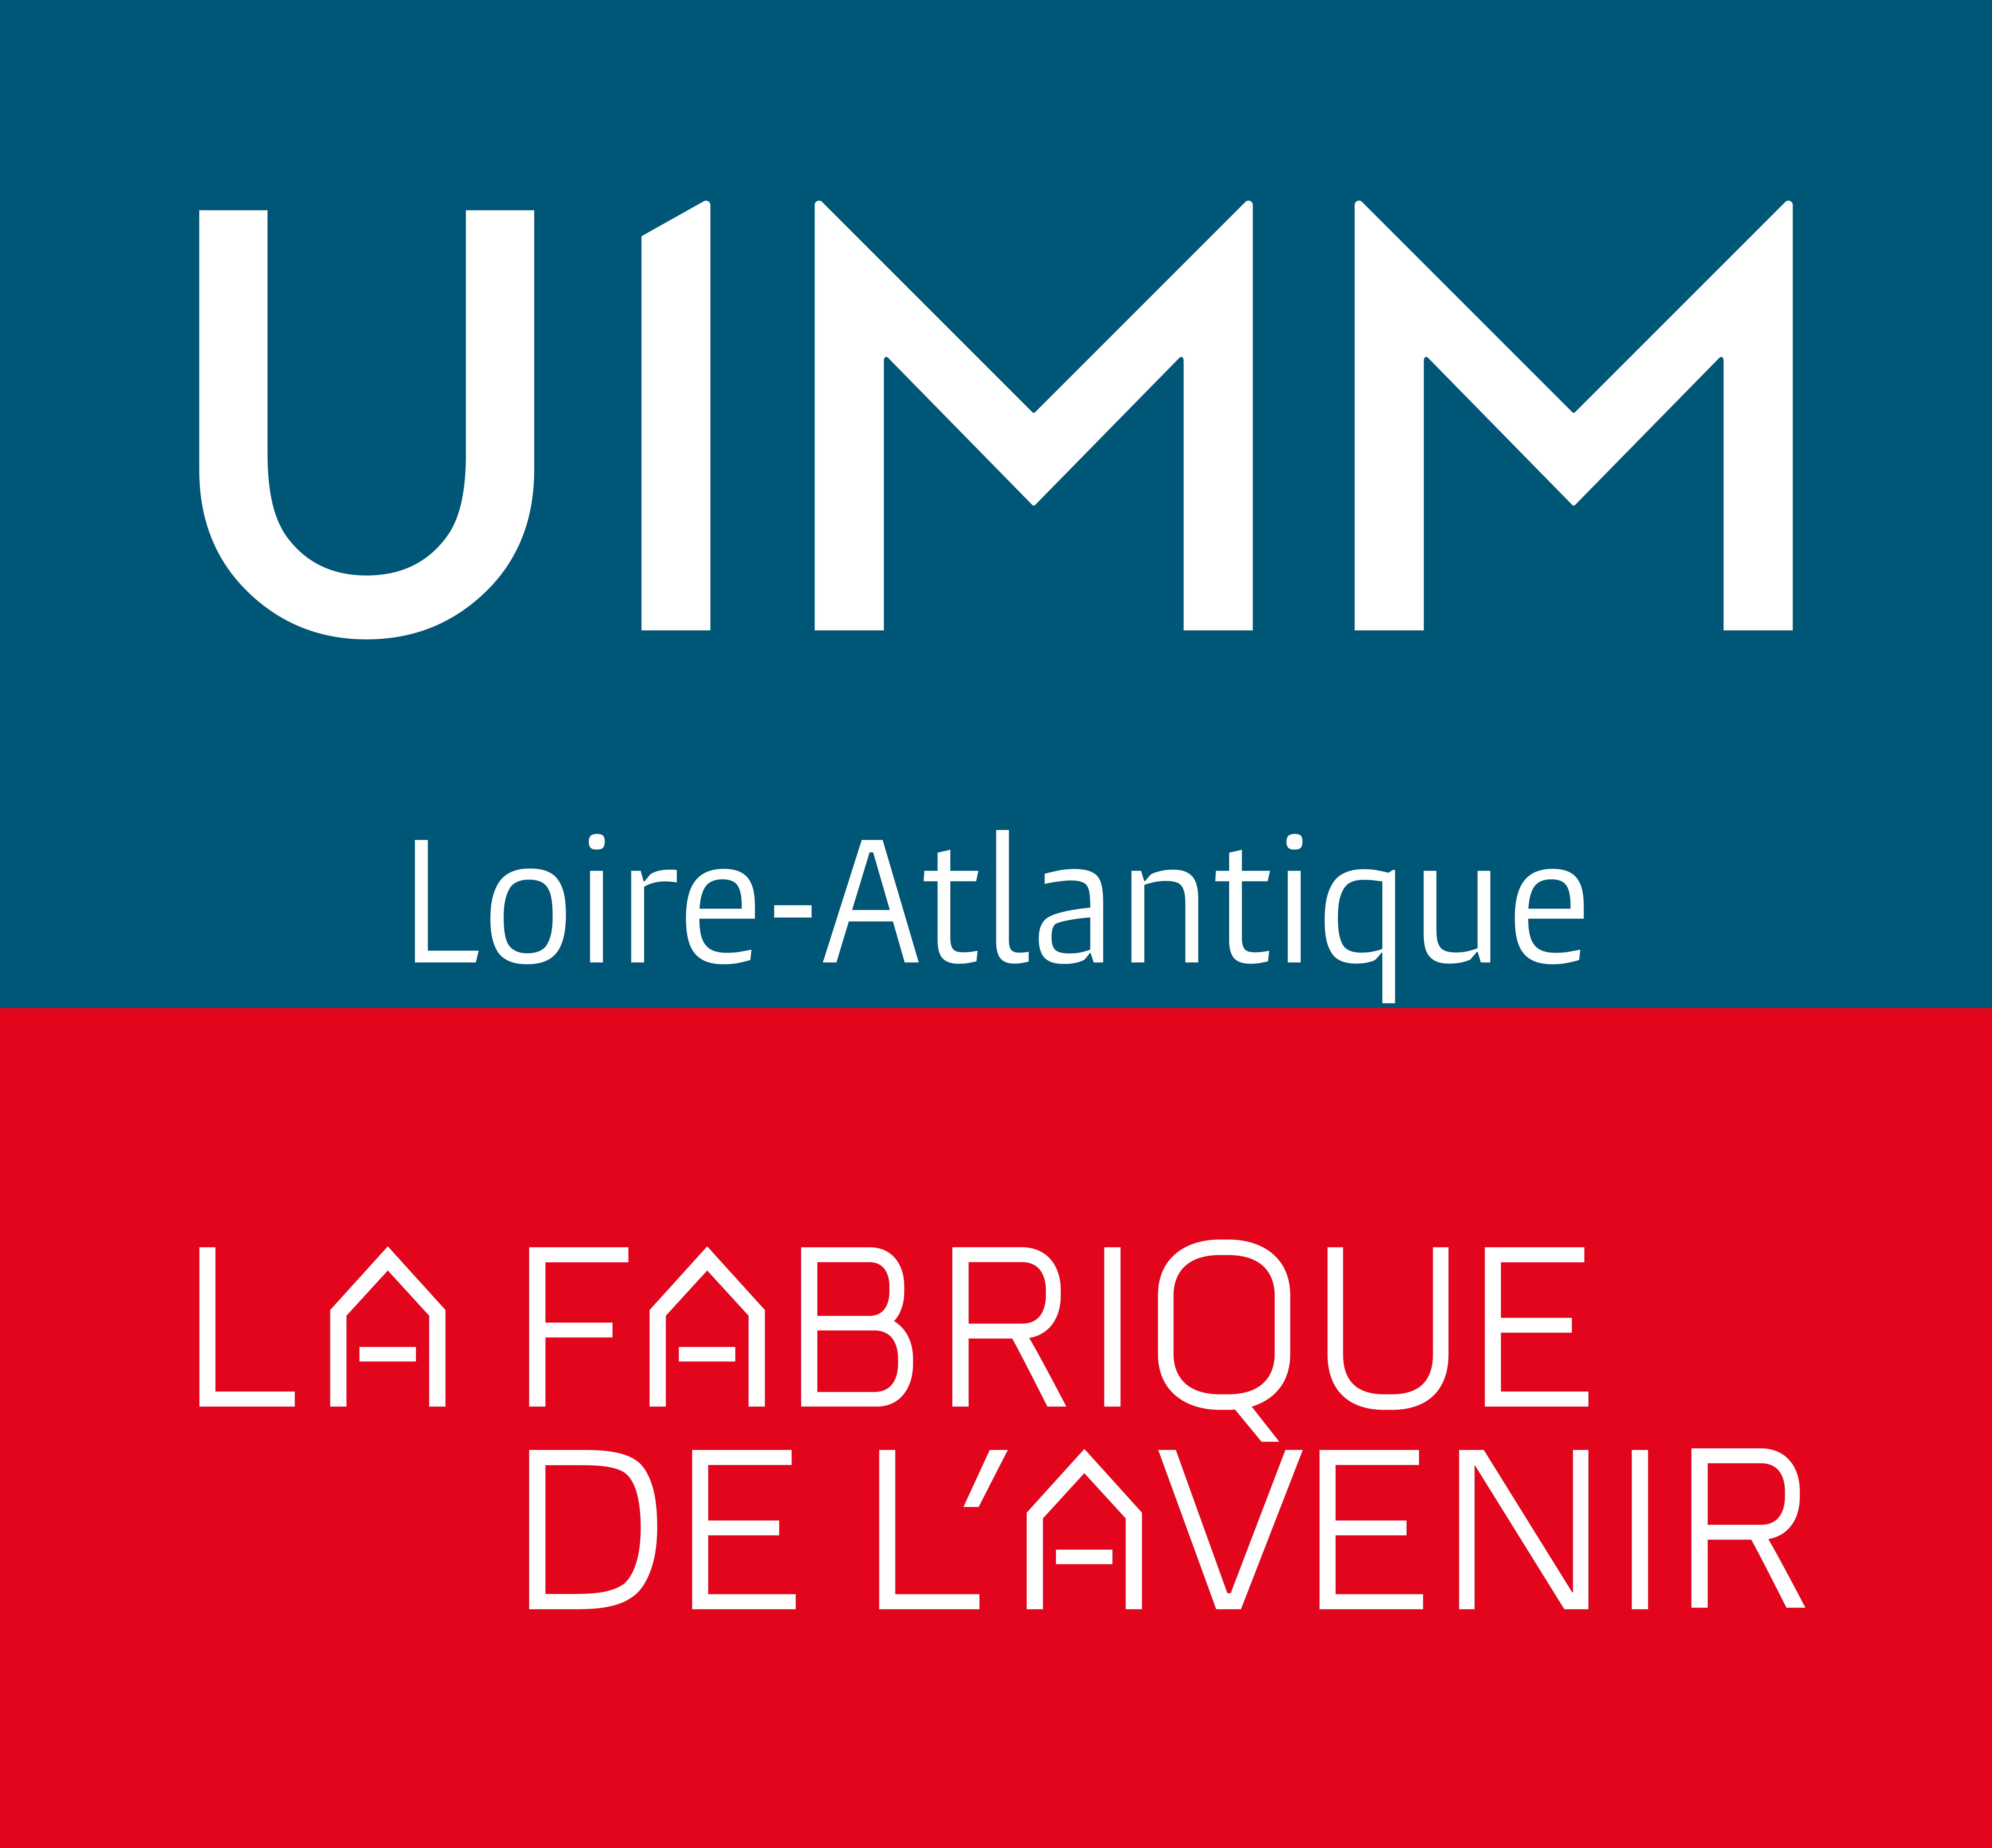 L¿Union des Industries et Métiers de la Métallurgie Loire-Atlantique (UIMM)